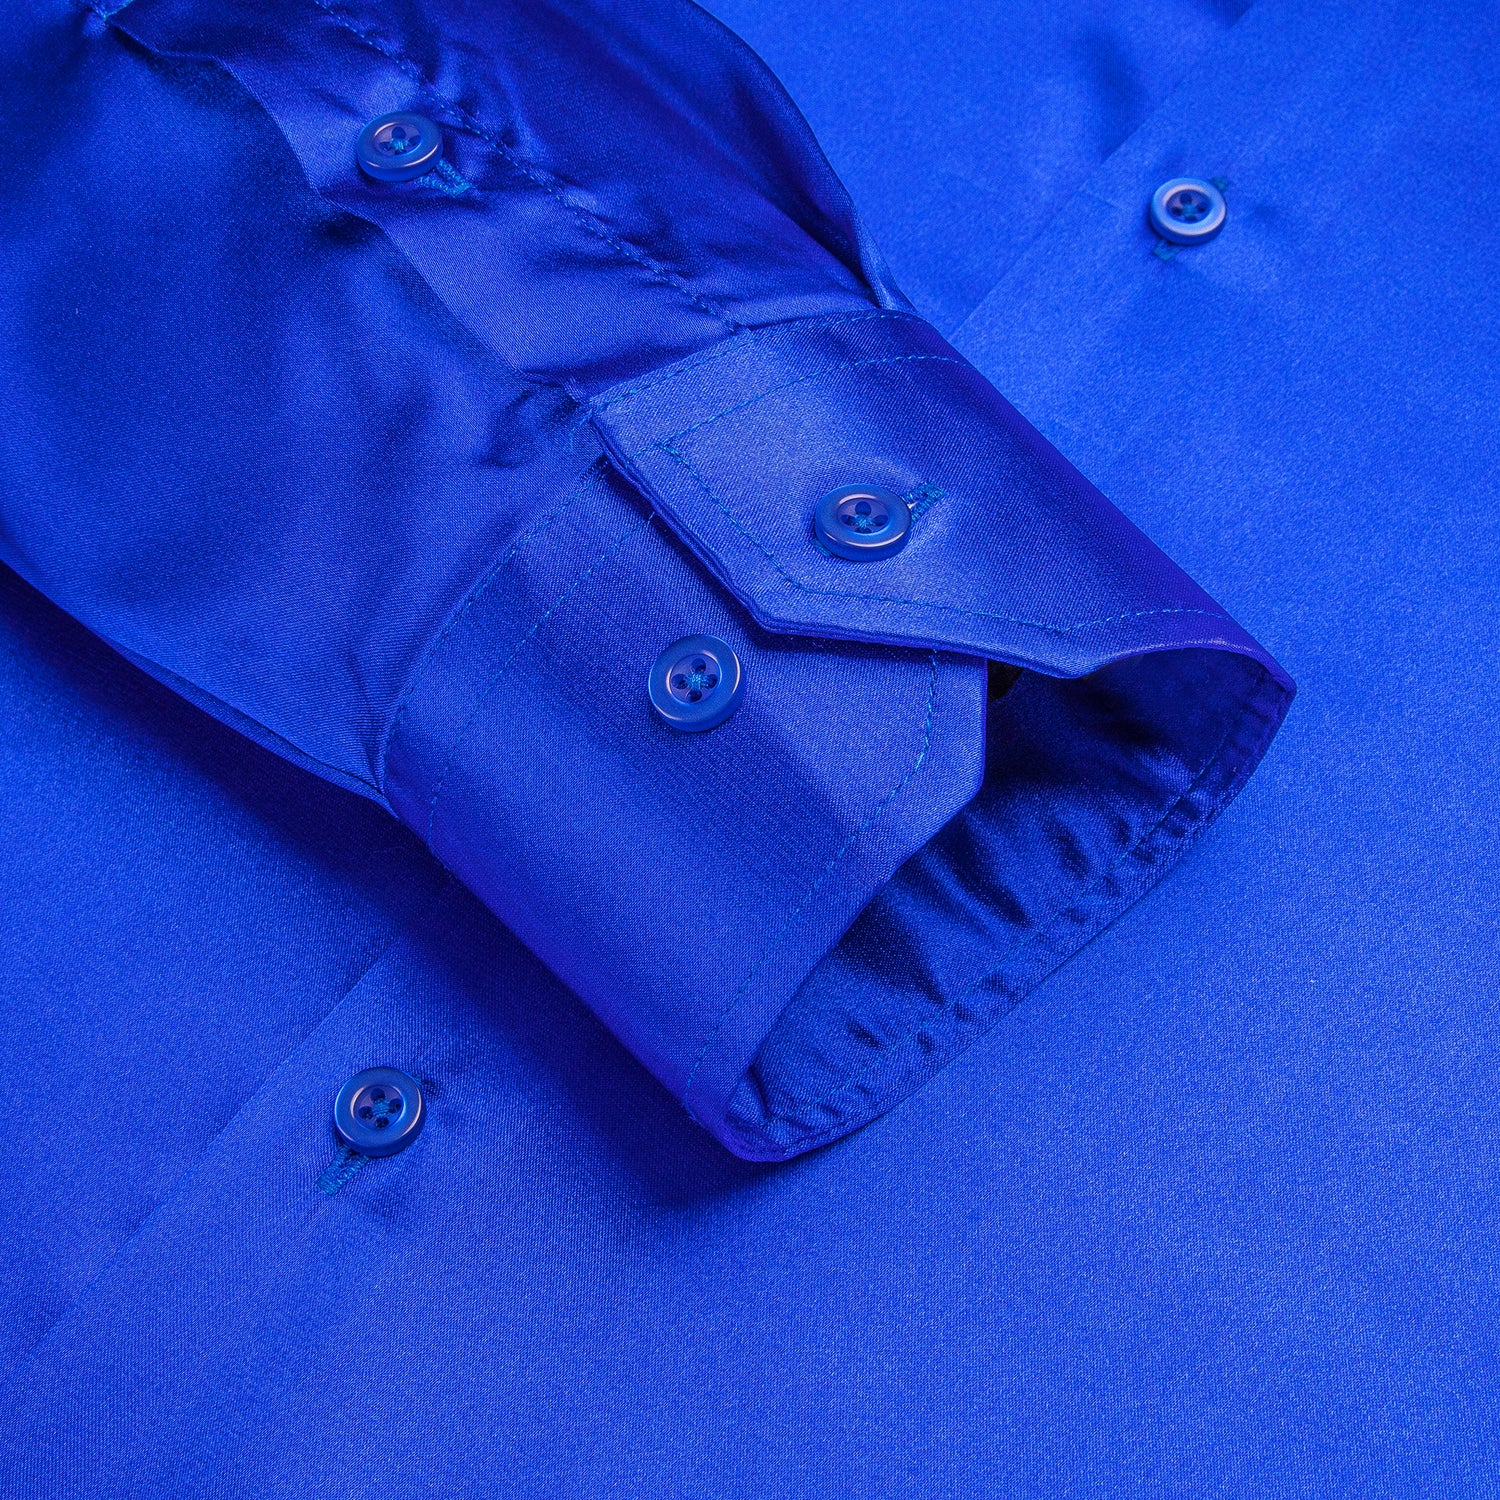 Klein Blue Solid Satin Silk Men's Long Sleeve Dress Shirt